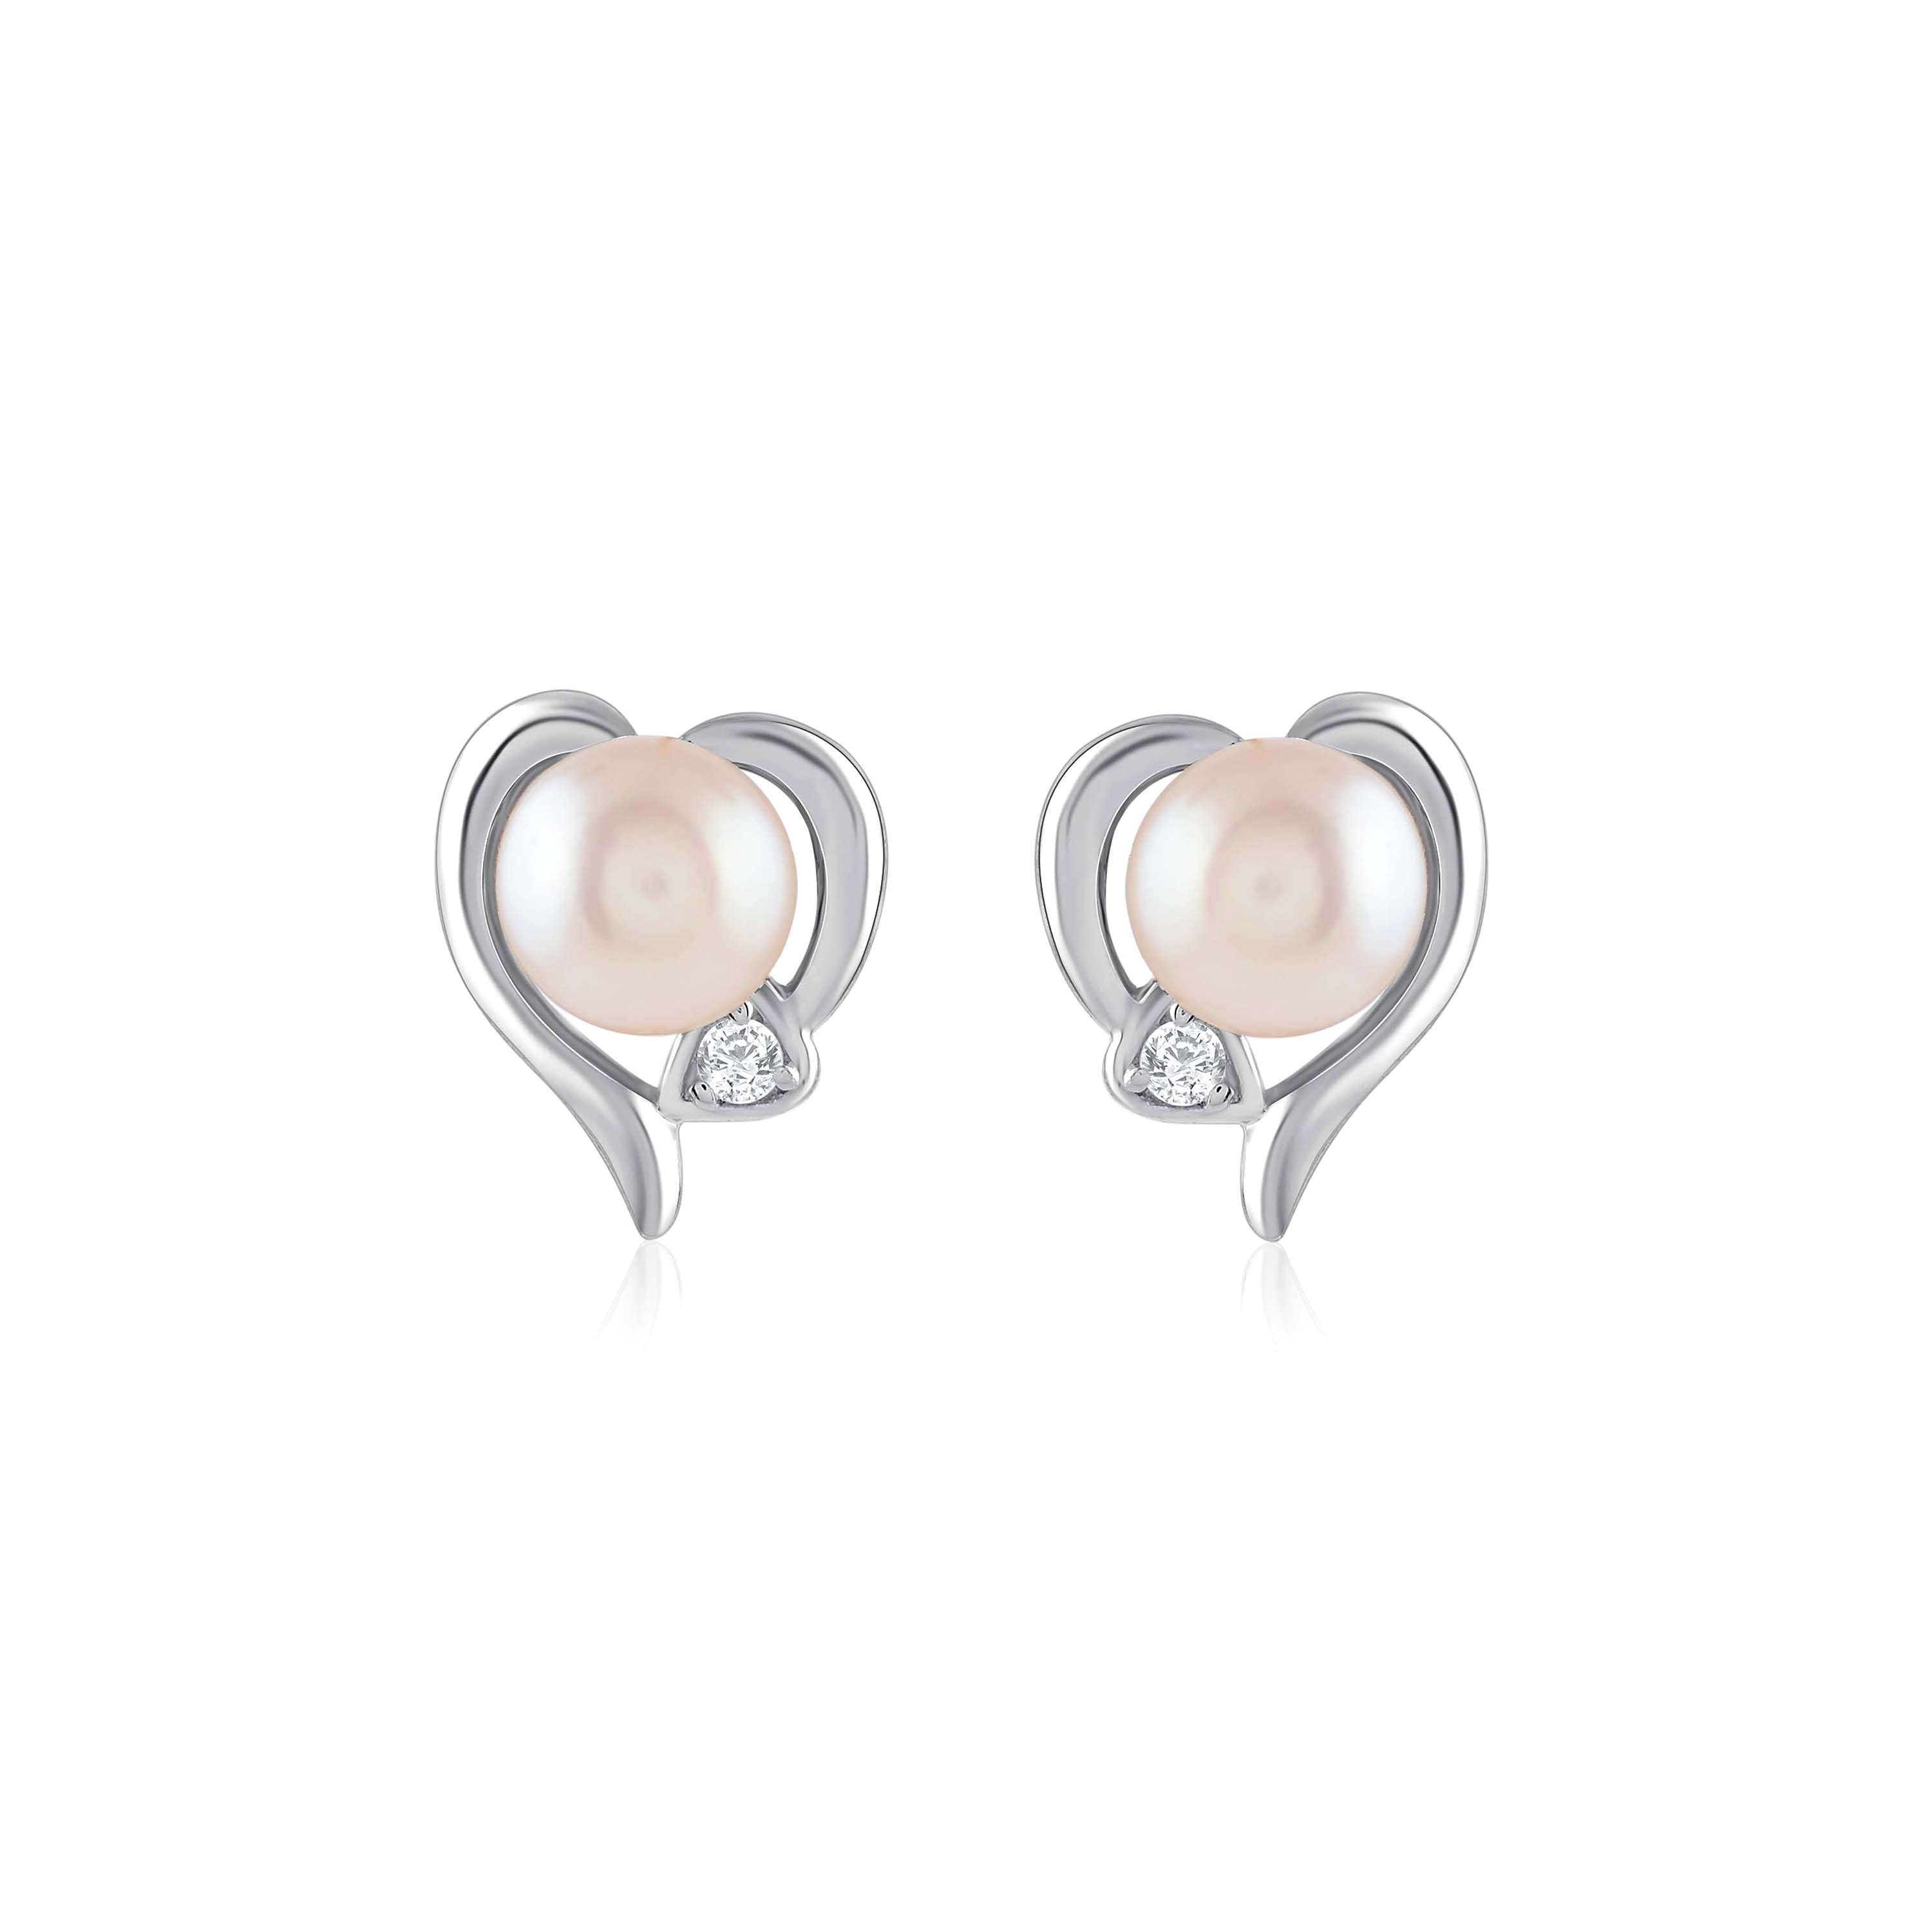 Decorative Freshwater Pearl Heart Shape Earring